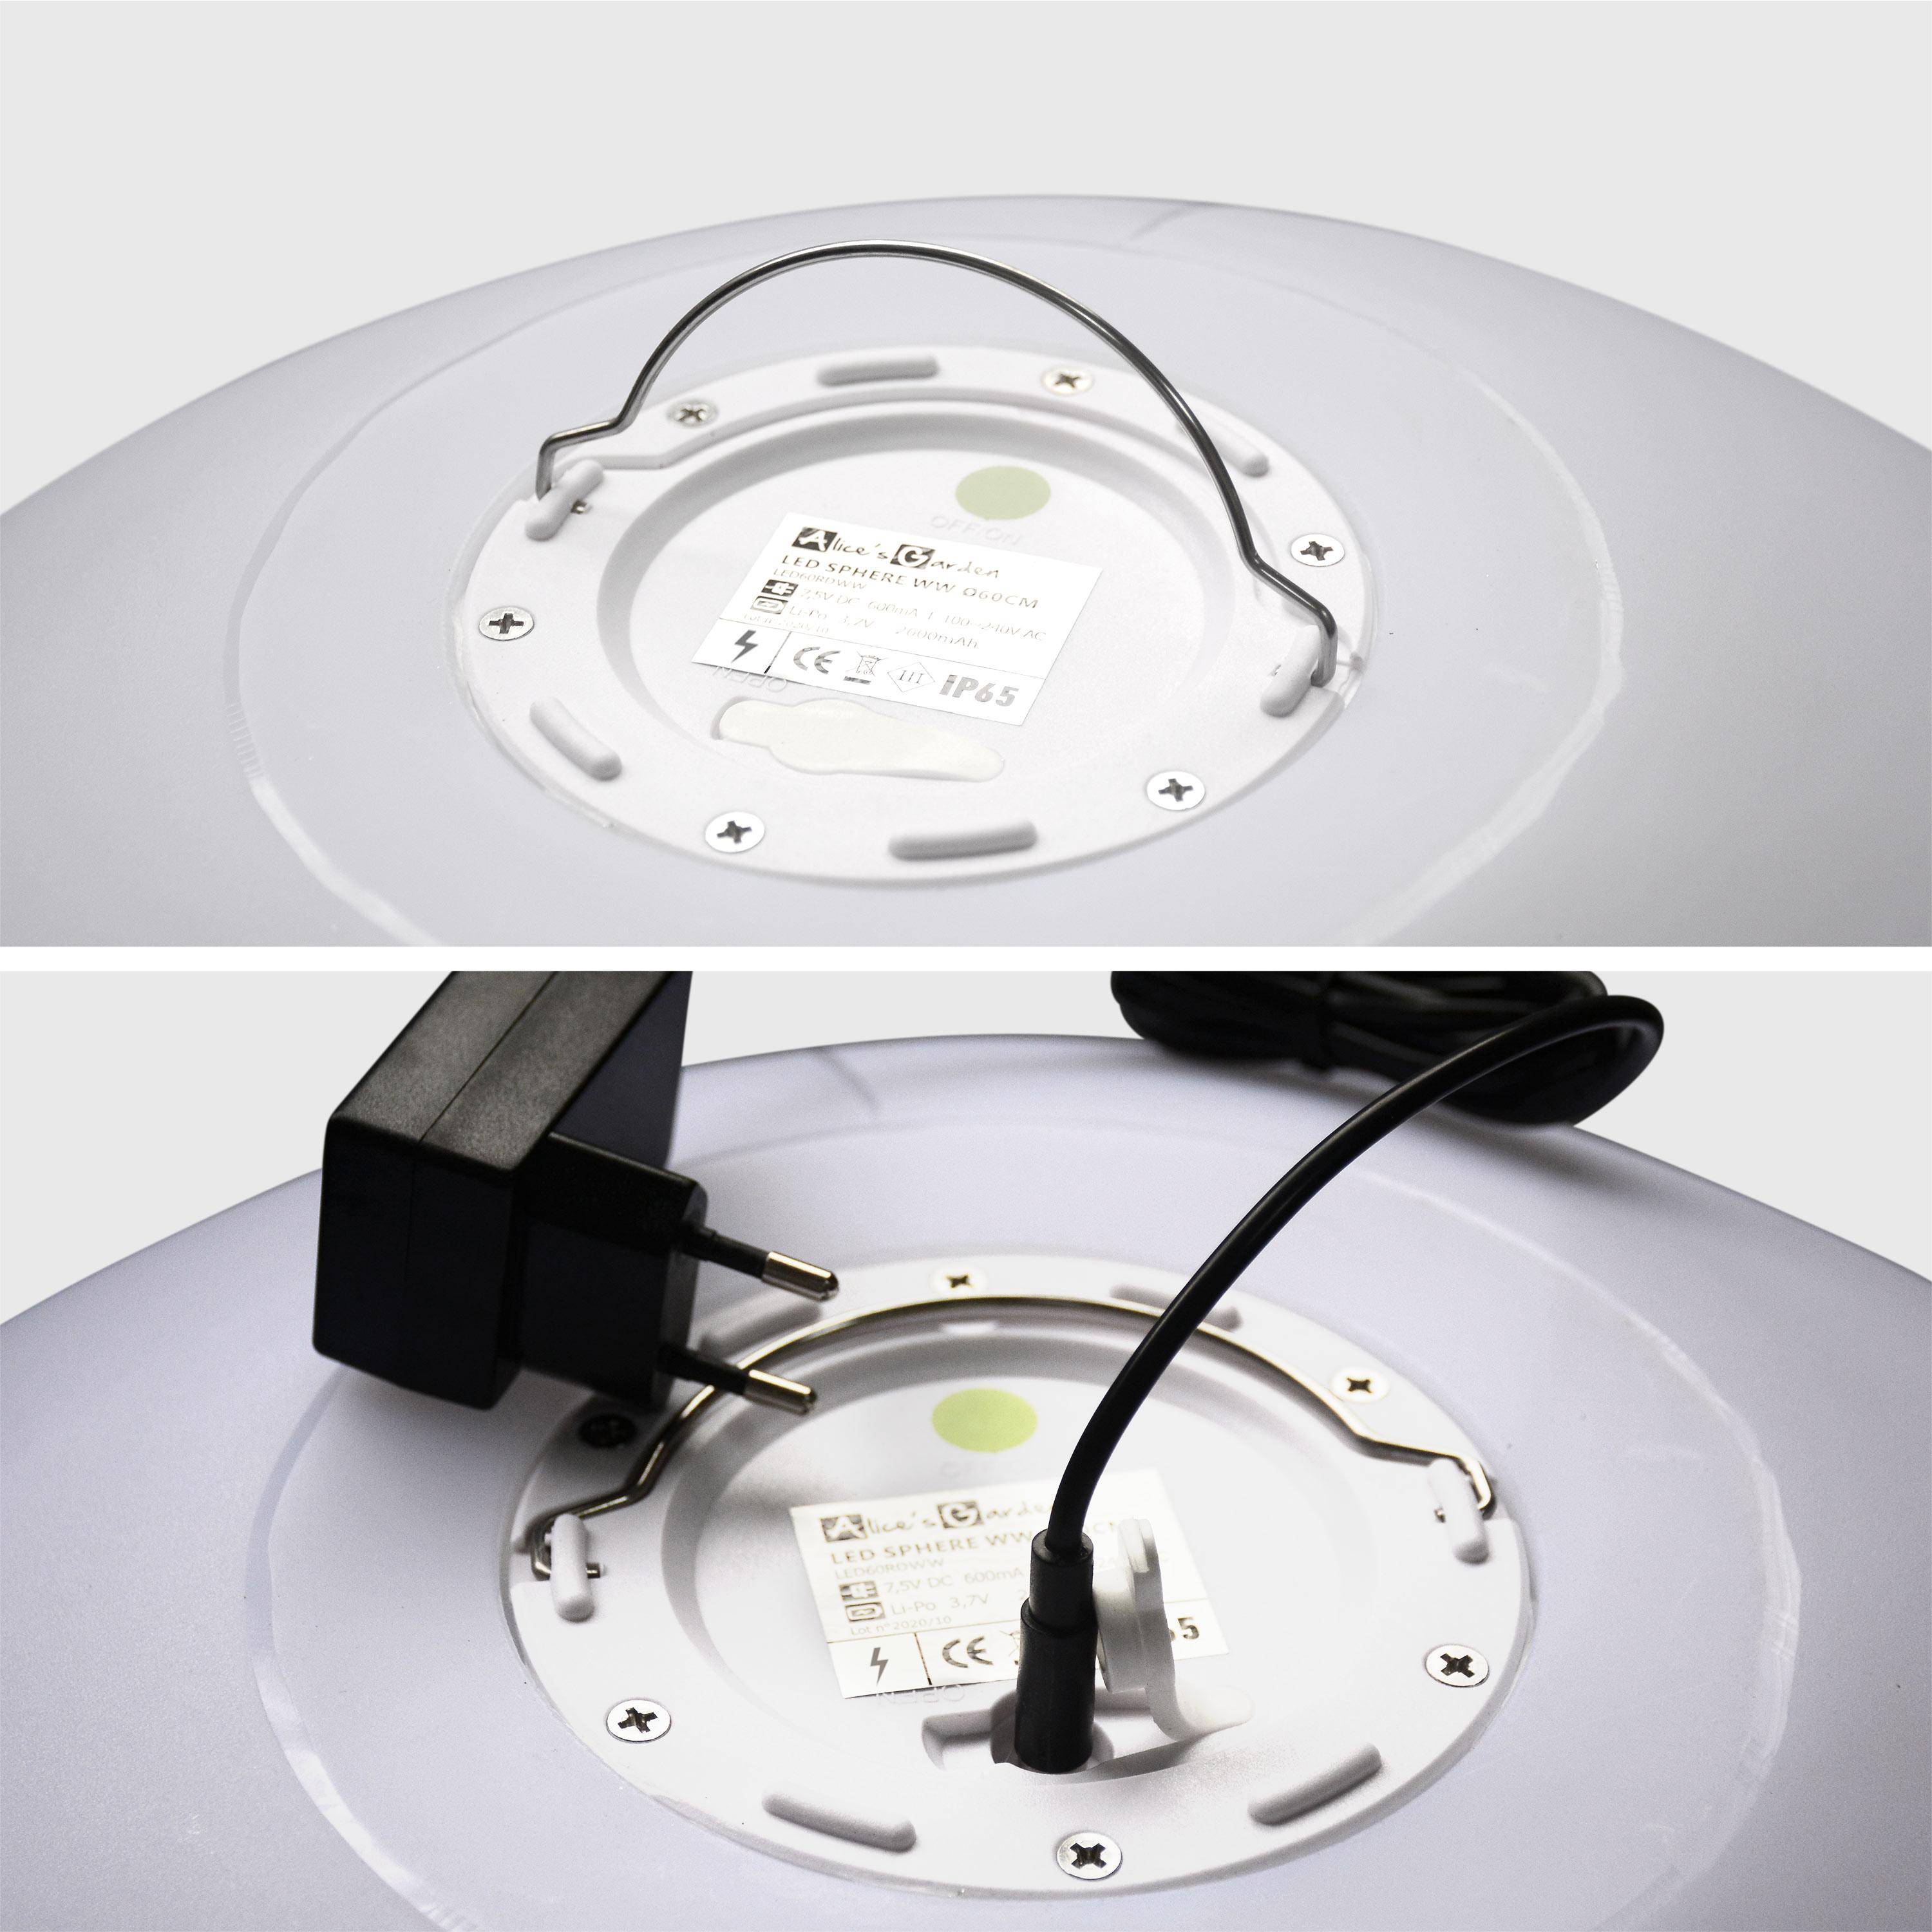 LED Bollamp 60cm – Decoratieve lichtbol, Ø60cm, warm wit, afstandsbediening Photo4